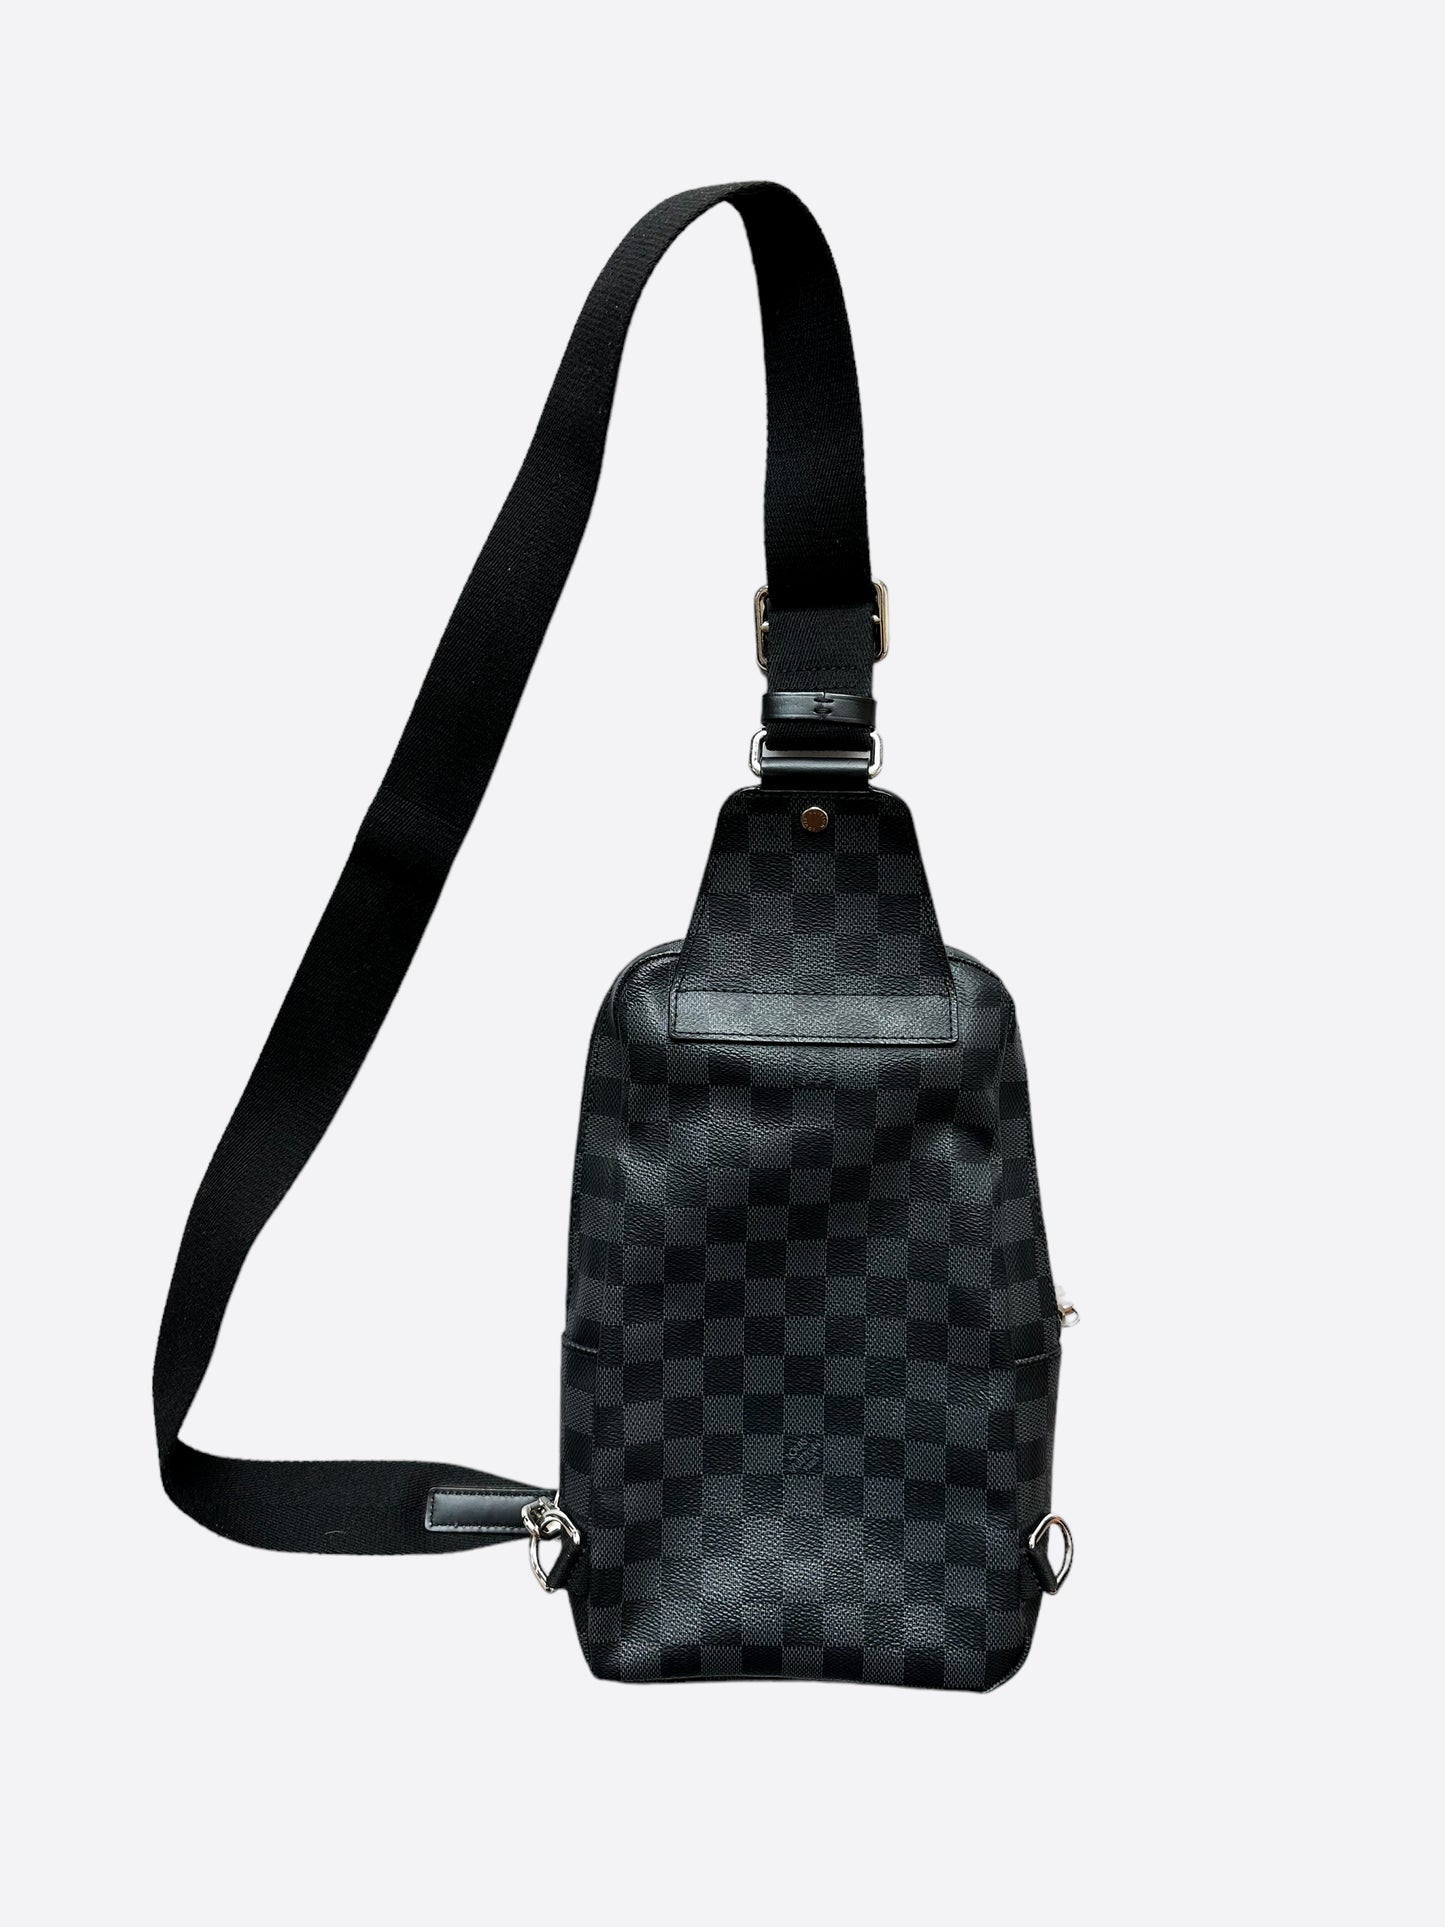 $1800 Louis Vuitton Avenue Sling Bag Damier Graphite Canvas Messenger -  Lust4Labels